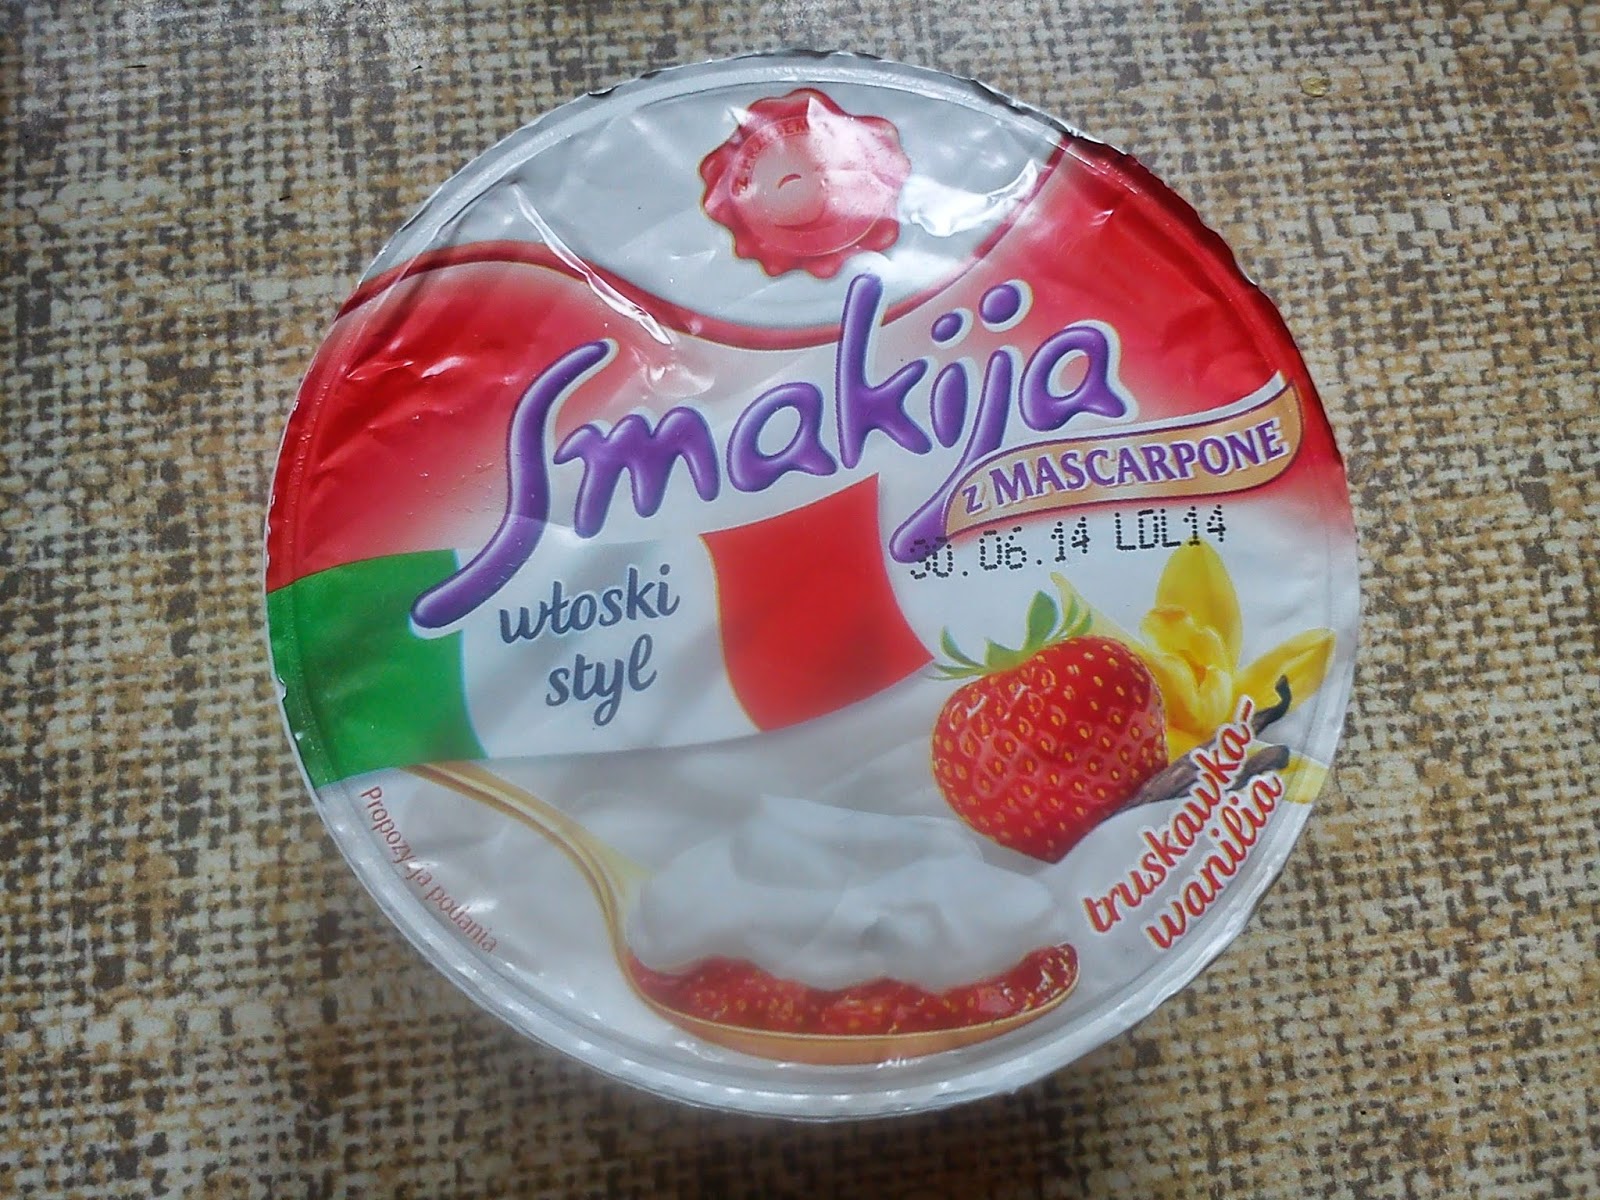 Smakija włoski styl z mascarpone truskawka-wanilia   Łagodny deser jogurtowych z mascarpone,truskawkami i wanilią